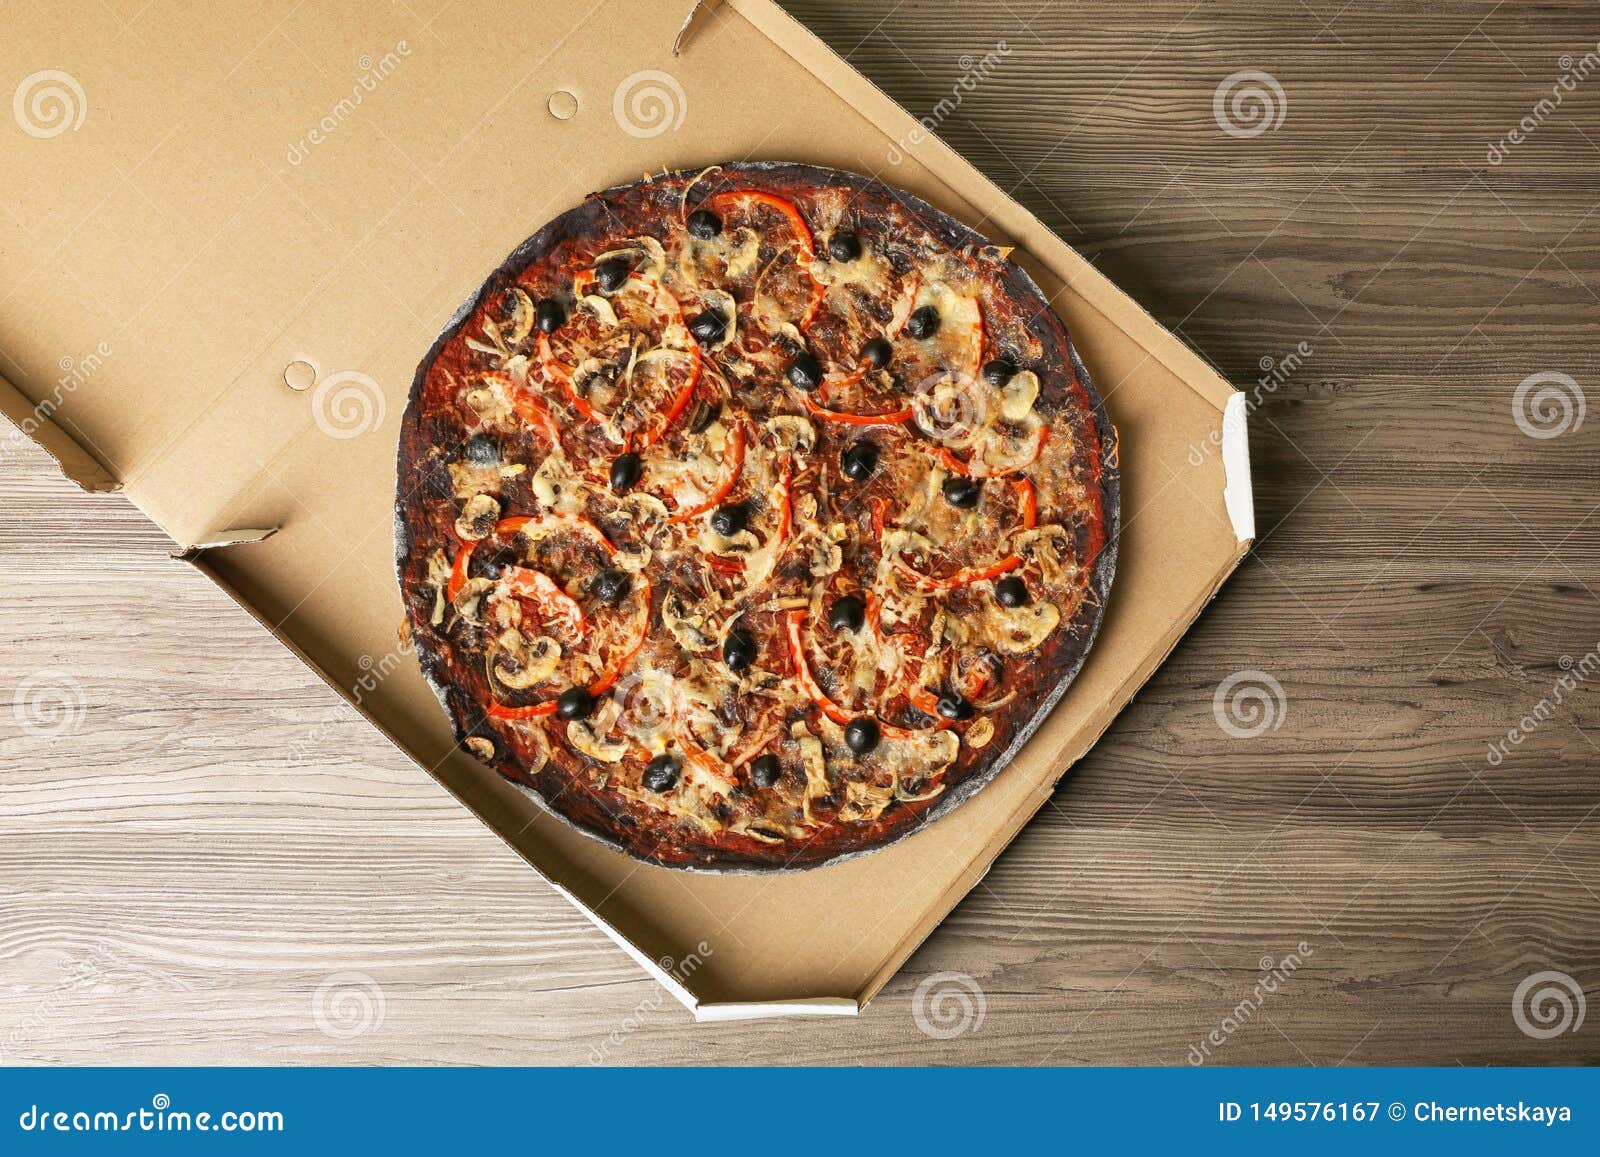 Коробка пиццы вид сверху. Пицца в коробке сверху. Пицца в коробке вид сверху. Коробка с пиицейвид сверху. Почему пицца круглая а коробка